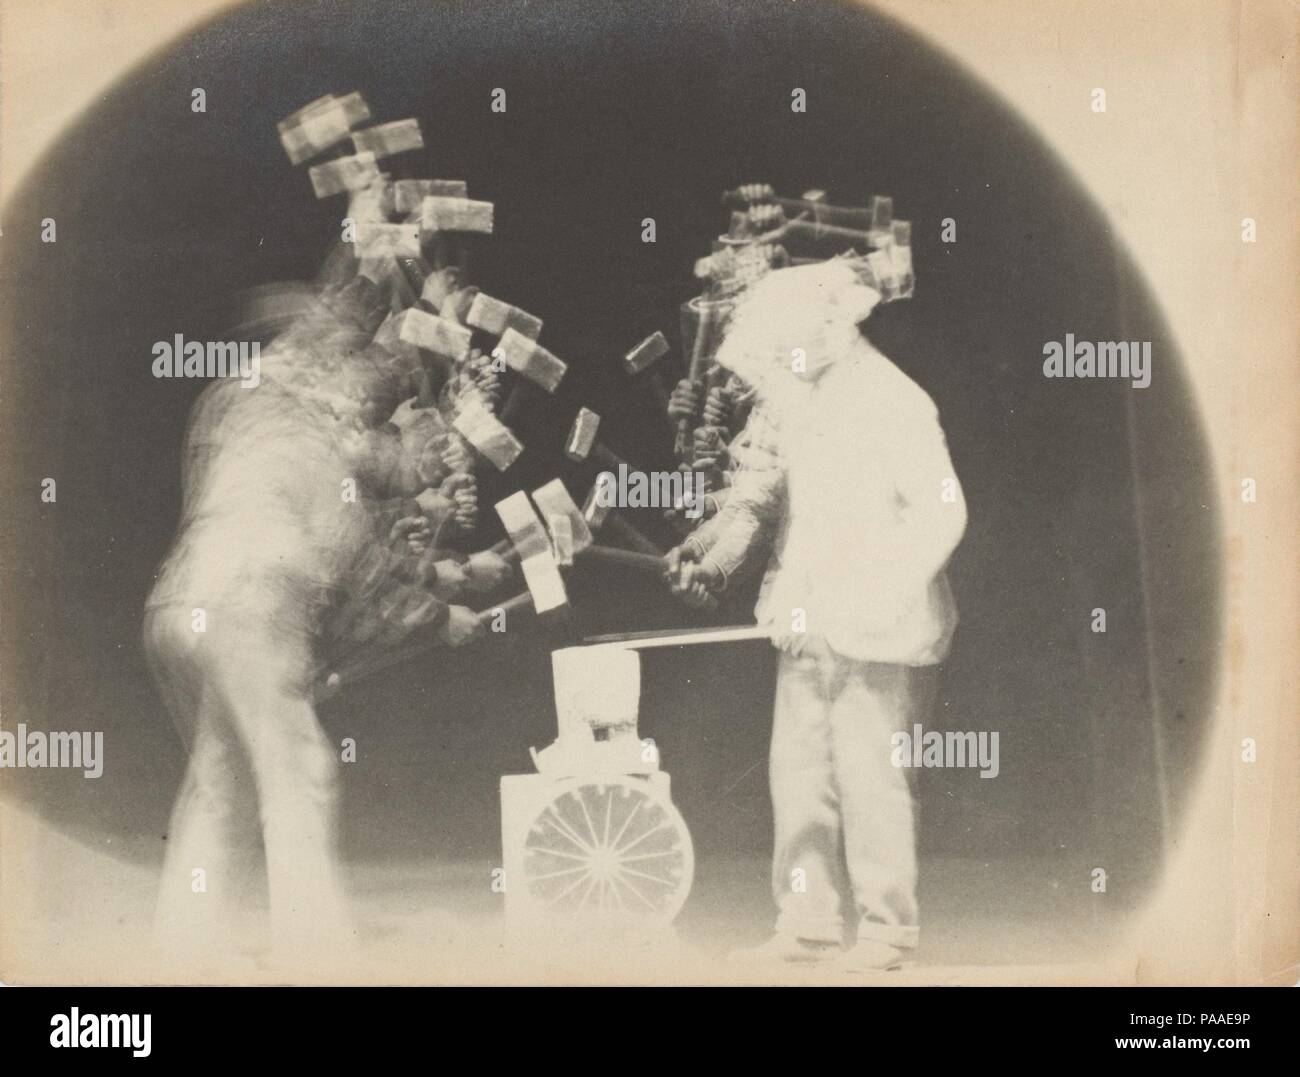 Chronophotograph. Artiste : Etienne-Jules Marey (Français, 1830-1904) ; Charles Fremont (Français, 1855-1930). Dimensions : 16,3 x 20,2 cm (6 16/07 x 7 15/16 in.). Date : 1894. Contrairement à la motion d'études Eadweard Muybridge, qui décrit le mouvement comme une série d'instants discrets sur des négatifs, séquentiel, Marey analysent motion sont caractérisées par des expositions multiples sur une seule plaque photographique. Dans cette photographie, Charles Fremont, un ingénieur civil qui a aidé Marey dans son laboratoire, utilisé Marey méthode pour étudier les forgerons à l'enclume ; la synthèse dynamique de leurs coups en arc de trac Banque D'Images